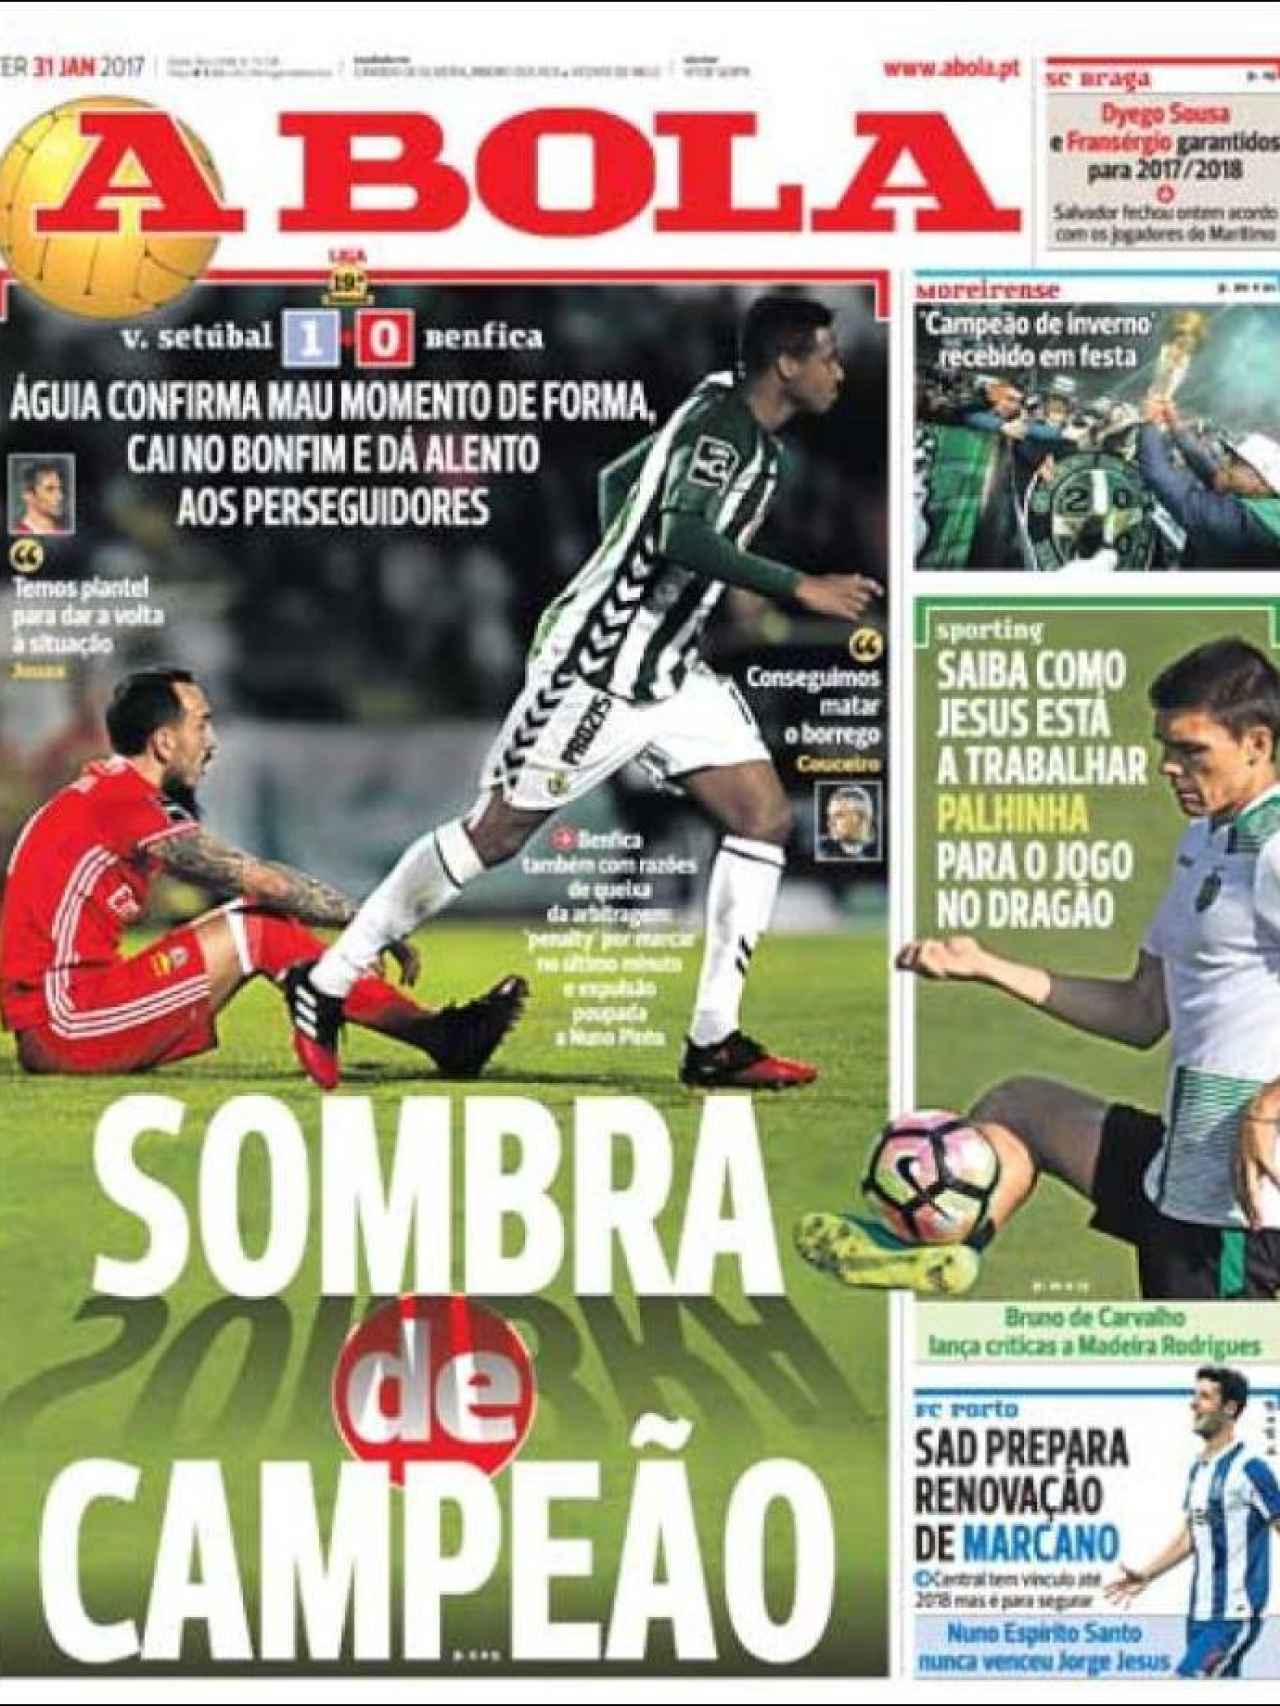 Las portadas de los diarios deportivos del martes 31 de enero